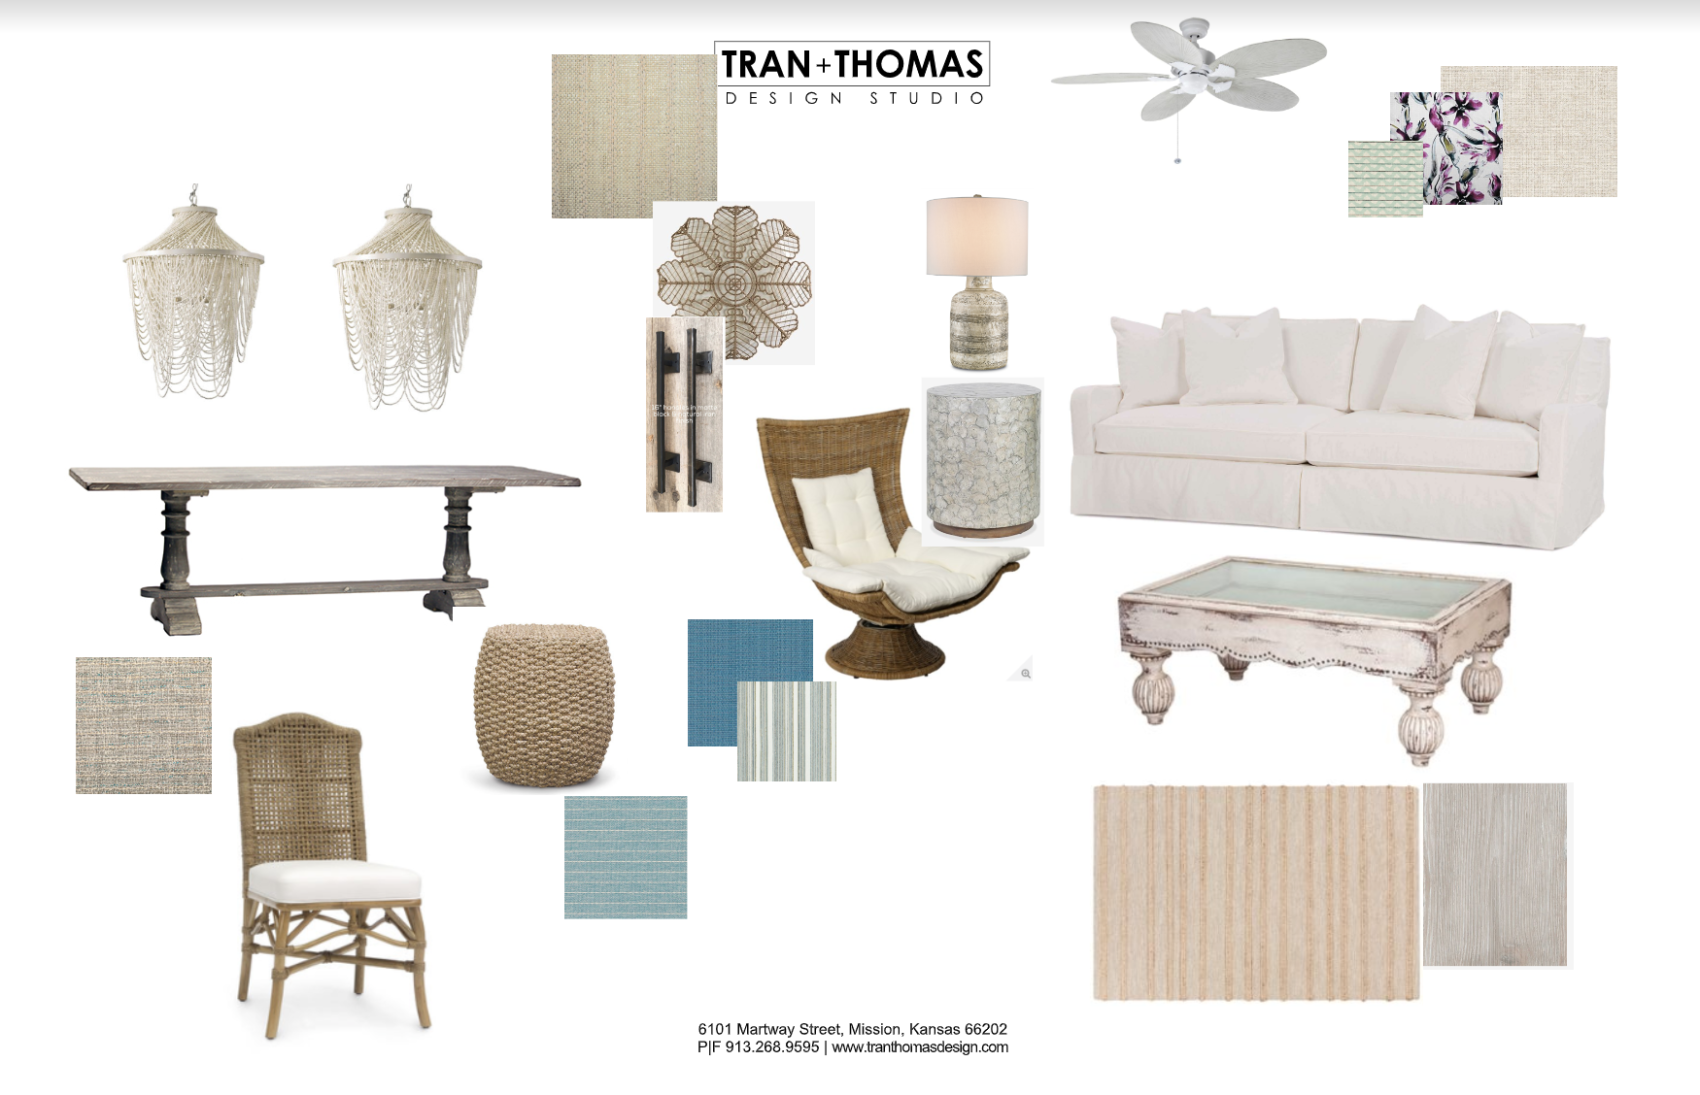 Tran and Thomas Interior Design, Kansas City interior design firm